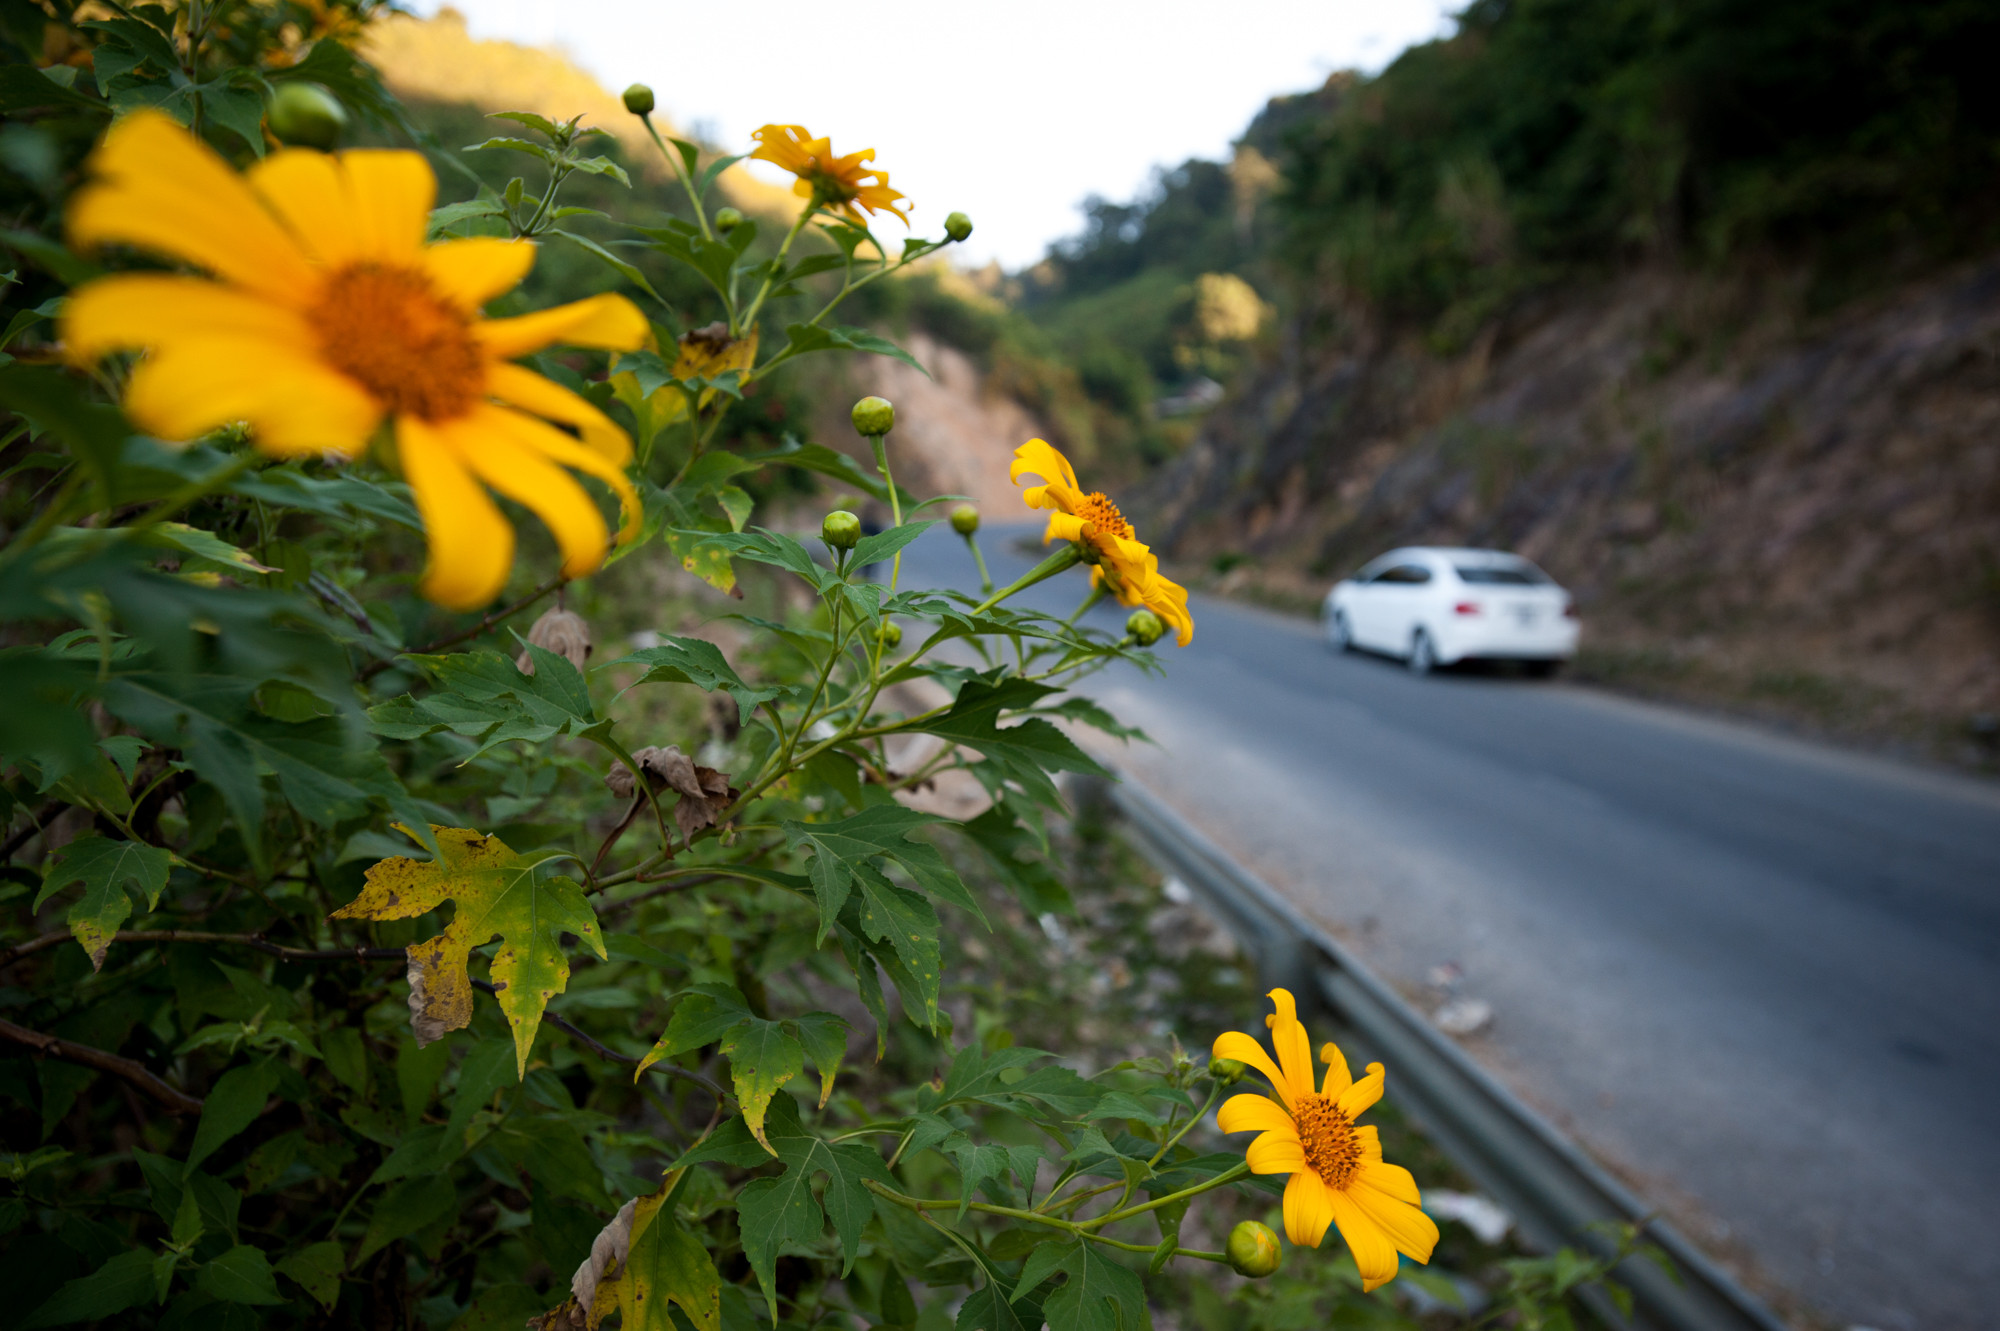 Hoa dã quỳ nở vàng rực bên đường Quốc lộ 7 đoạn lên Cửa khẩu Nậm Cắn. Ảnh Thành Cường.jpg